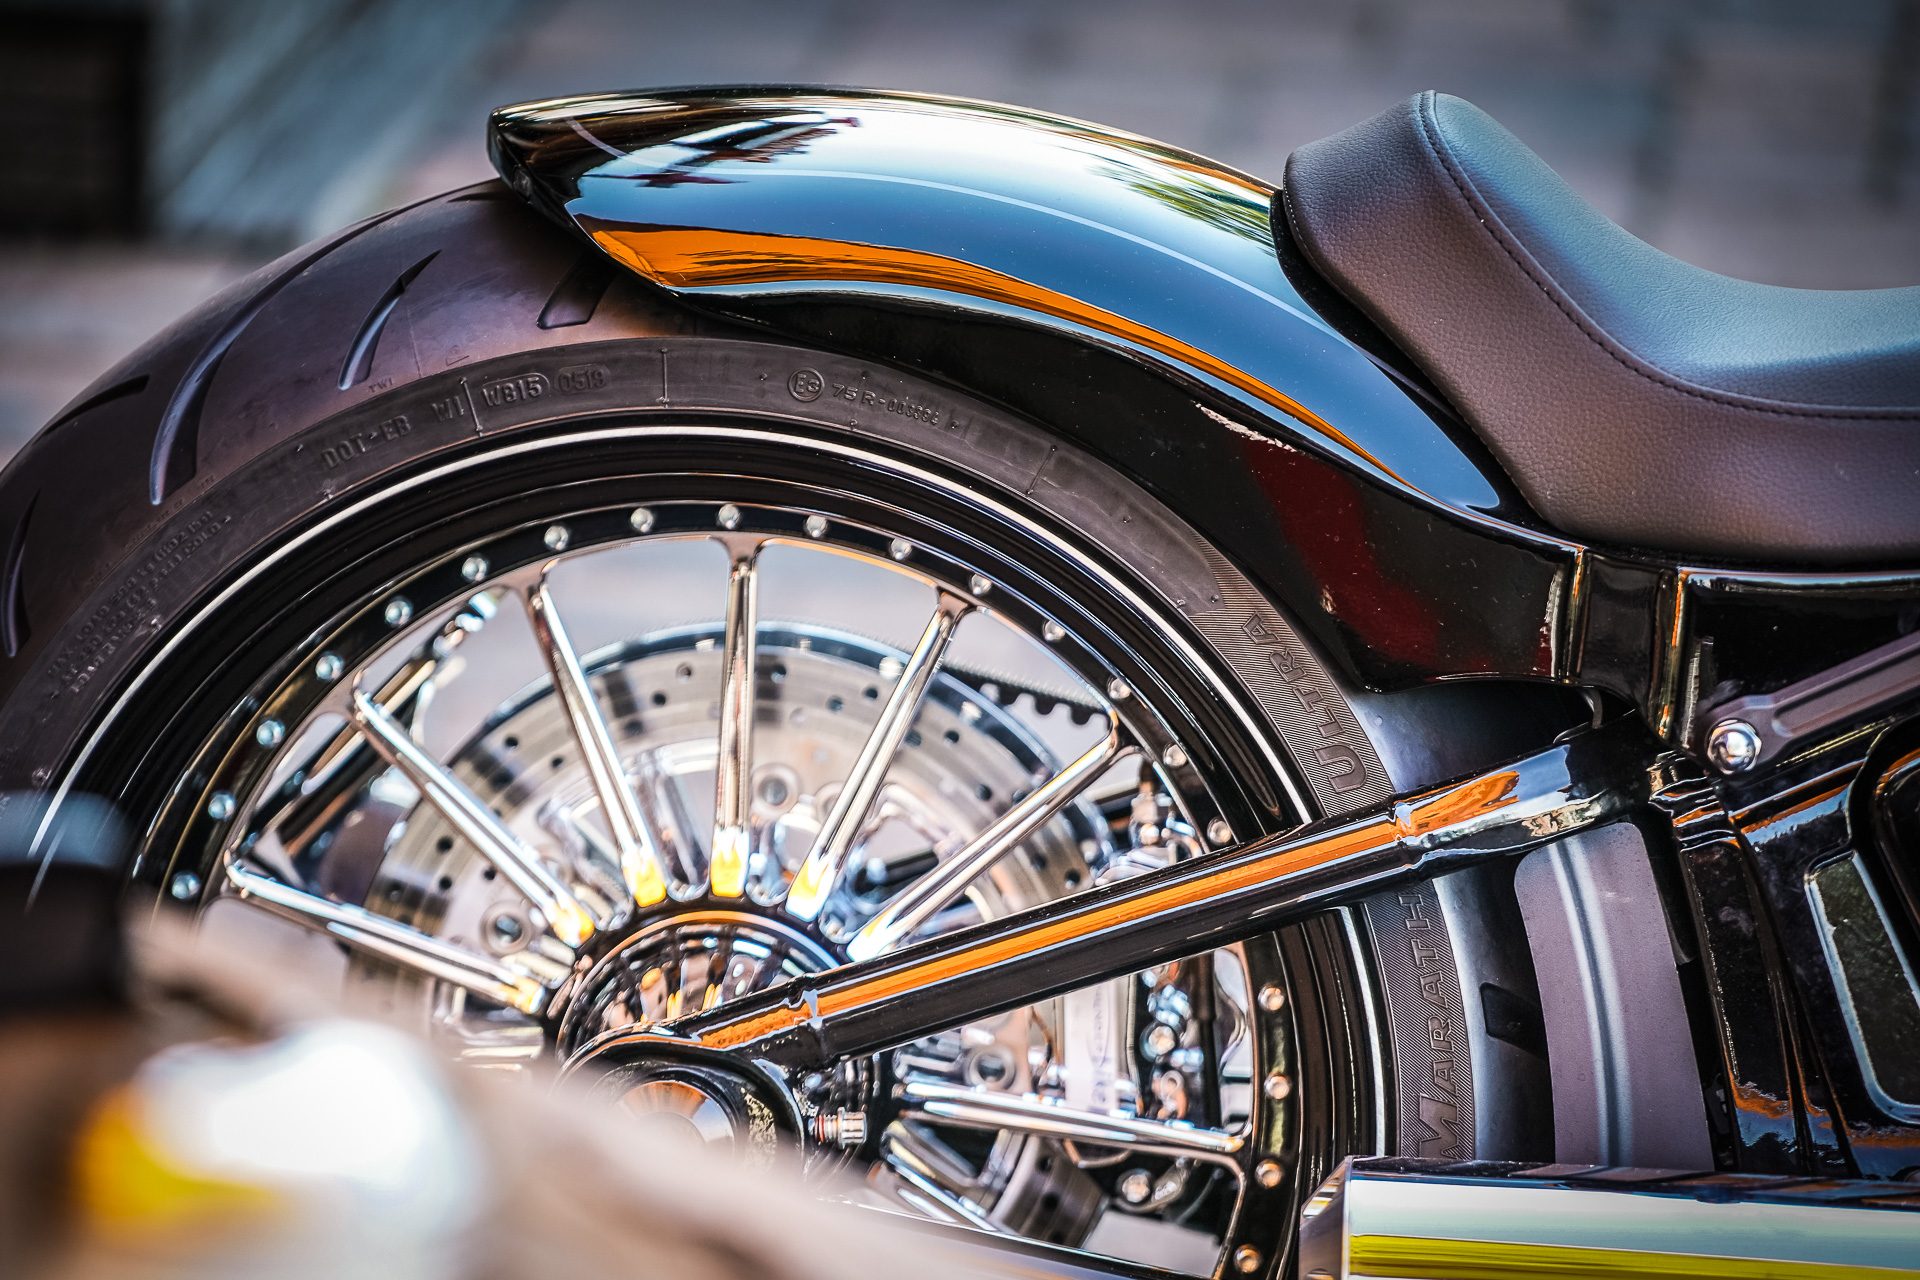 Thunderbike Bright Ride • Custombike & Harley-Davidson Gallery